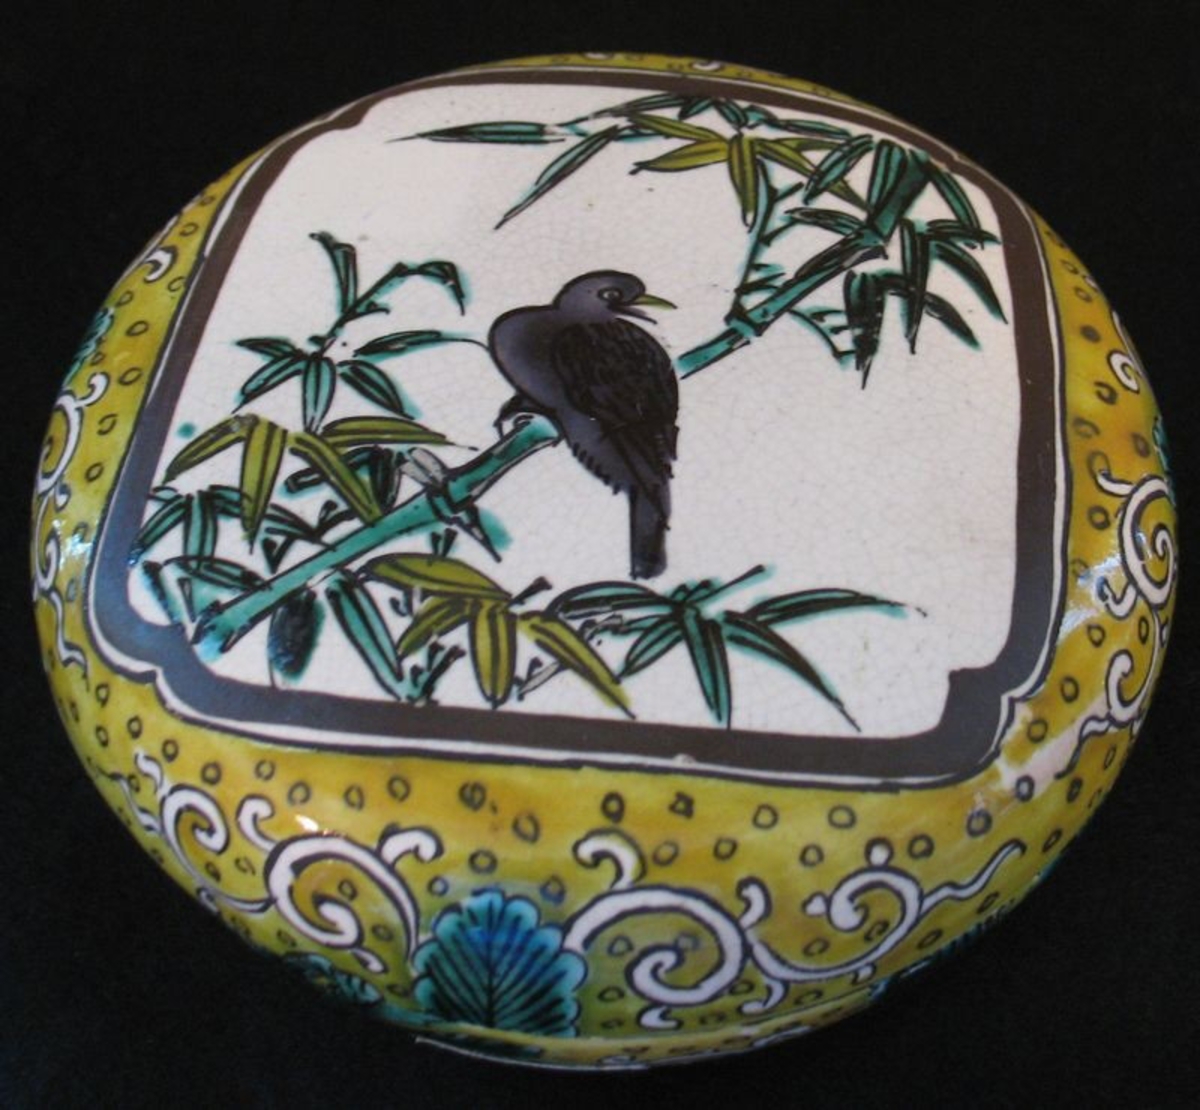 Platt lock, dekor: fågel i bambuträd målad med gult, grönt, brunt och blått, på beigeaktig glasyr. Något krackelerad, omärkt.